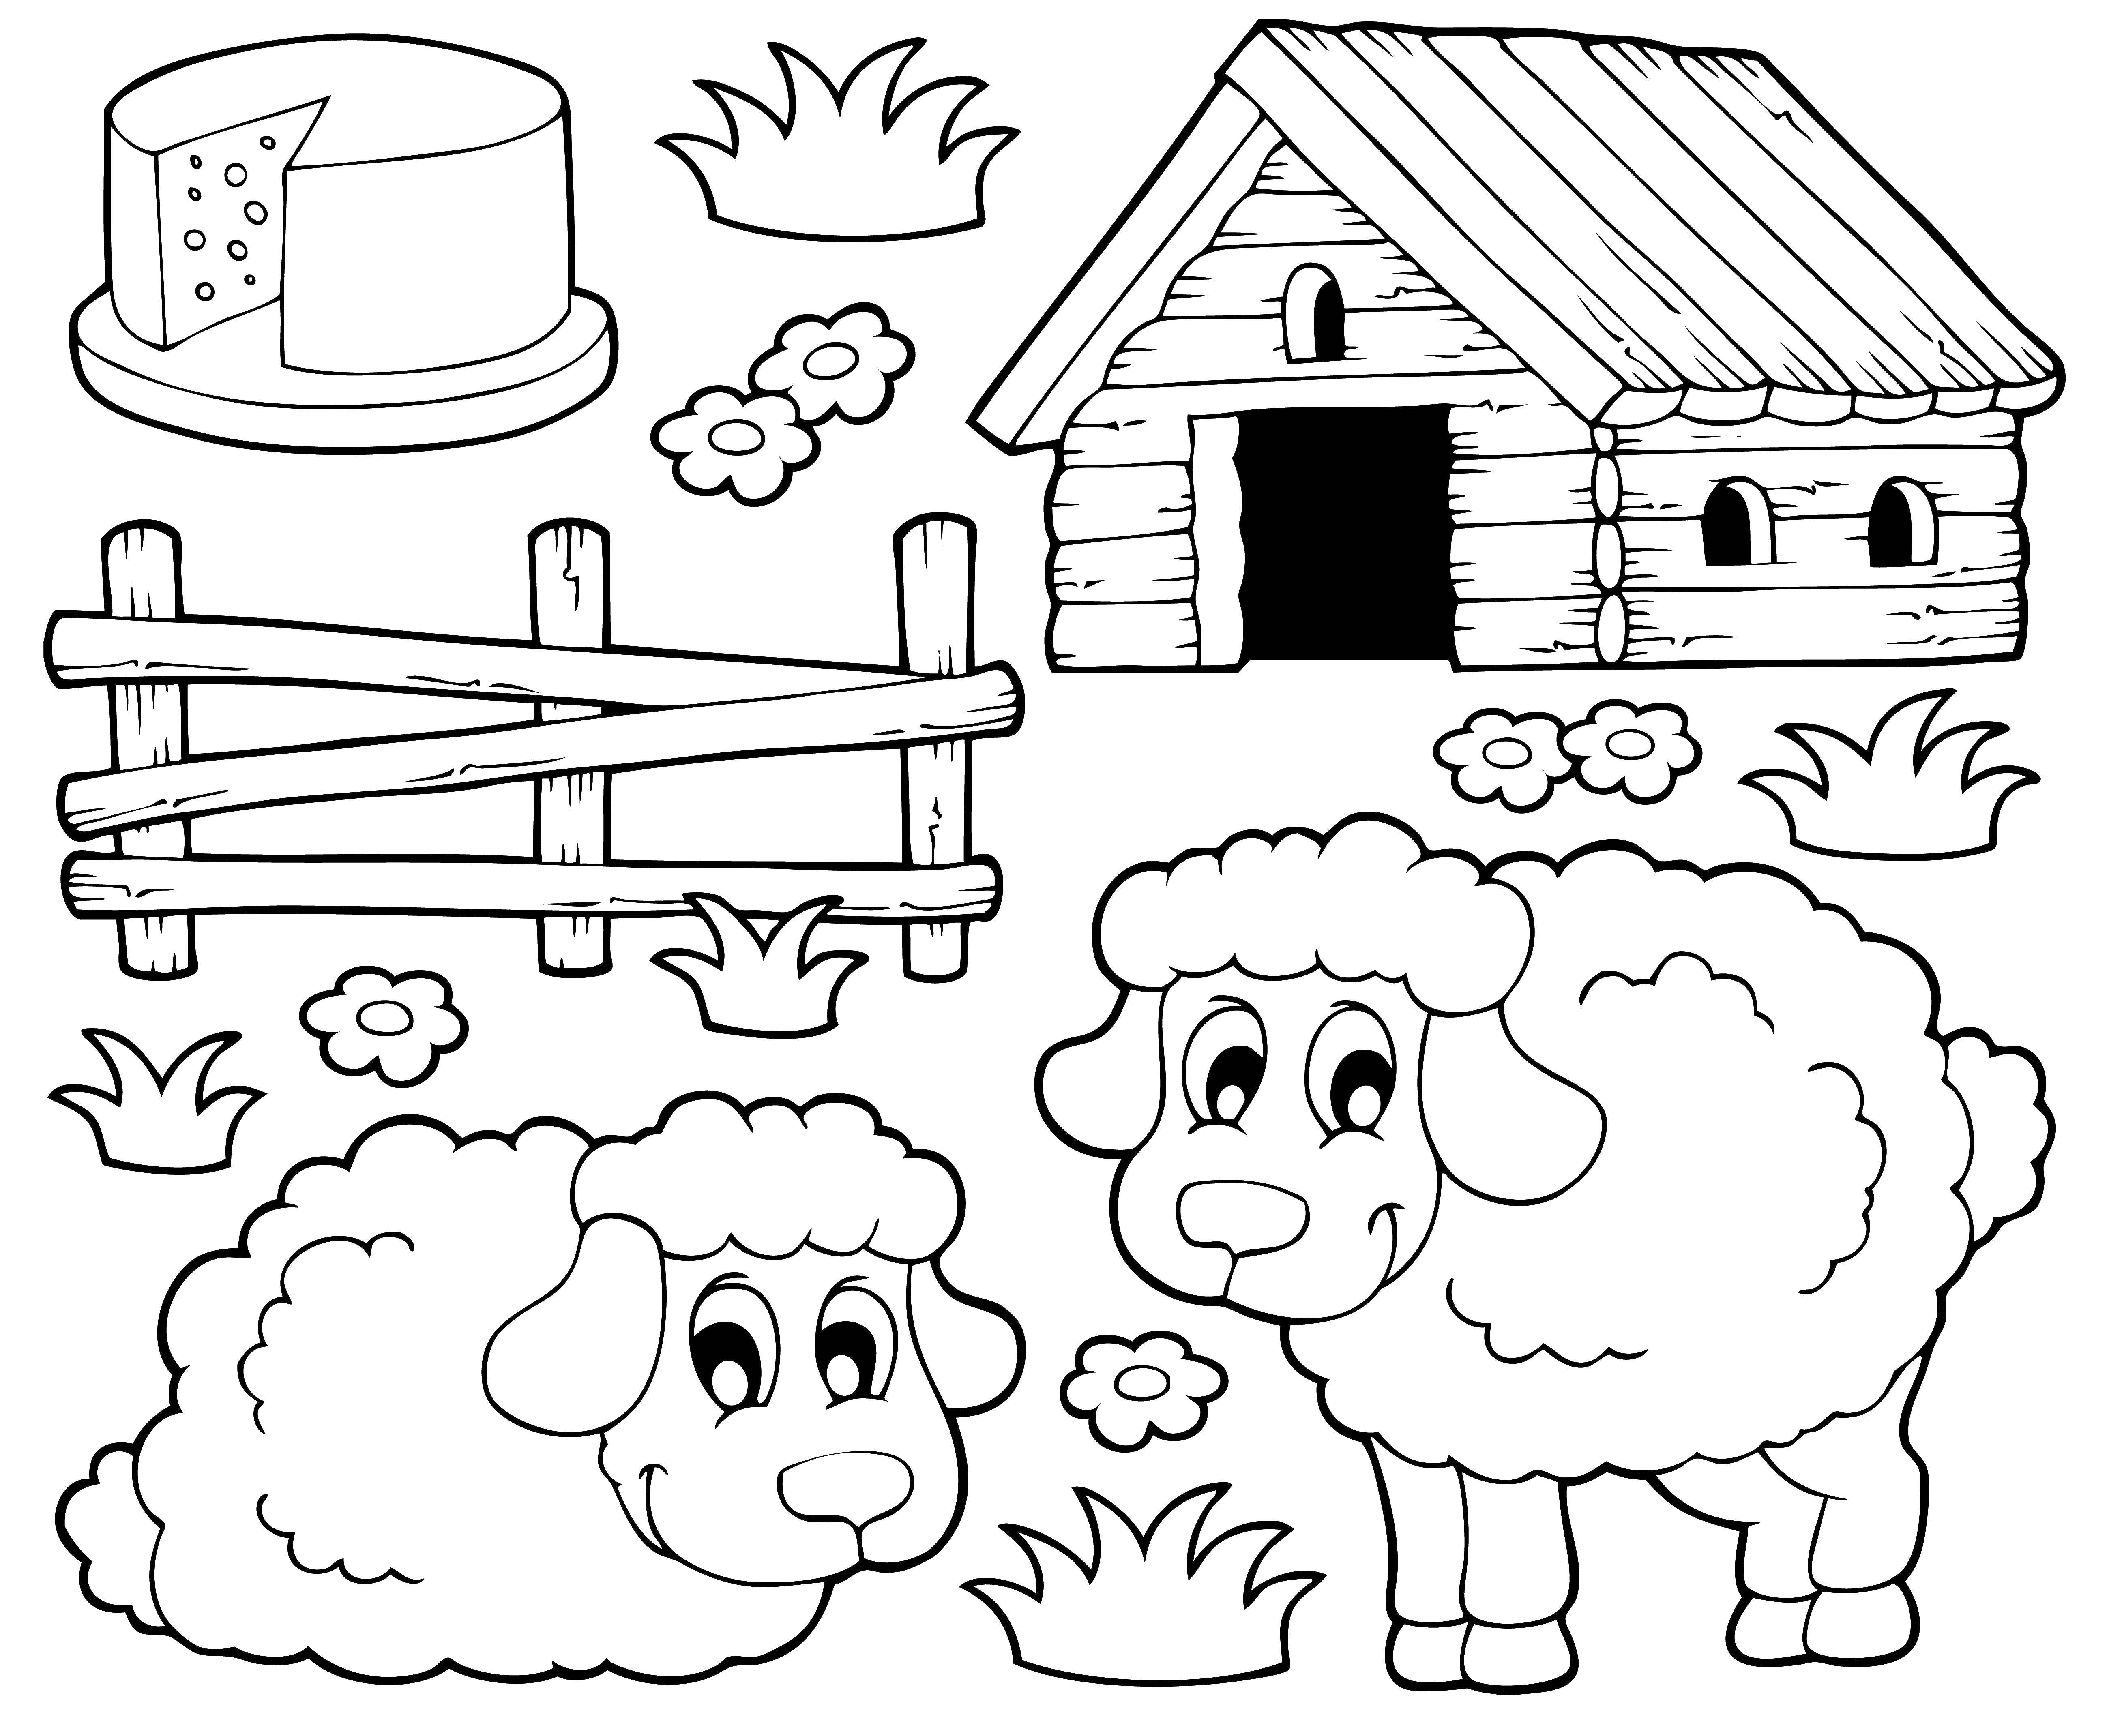 Розмальовки  Овечки у будиночка. Завантажити розмальовку село, худоба, вівці, будиночок.  Роздрукувати ,село,